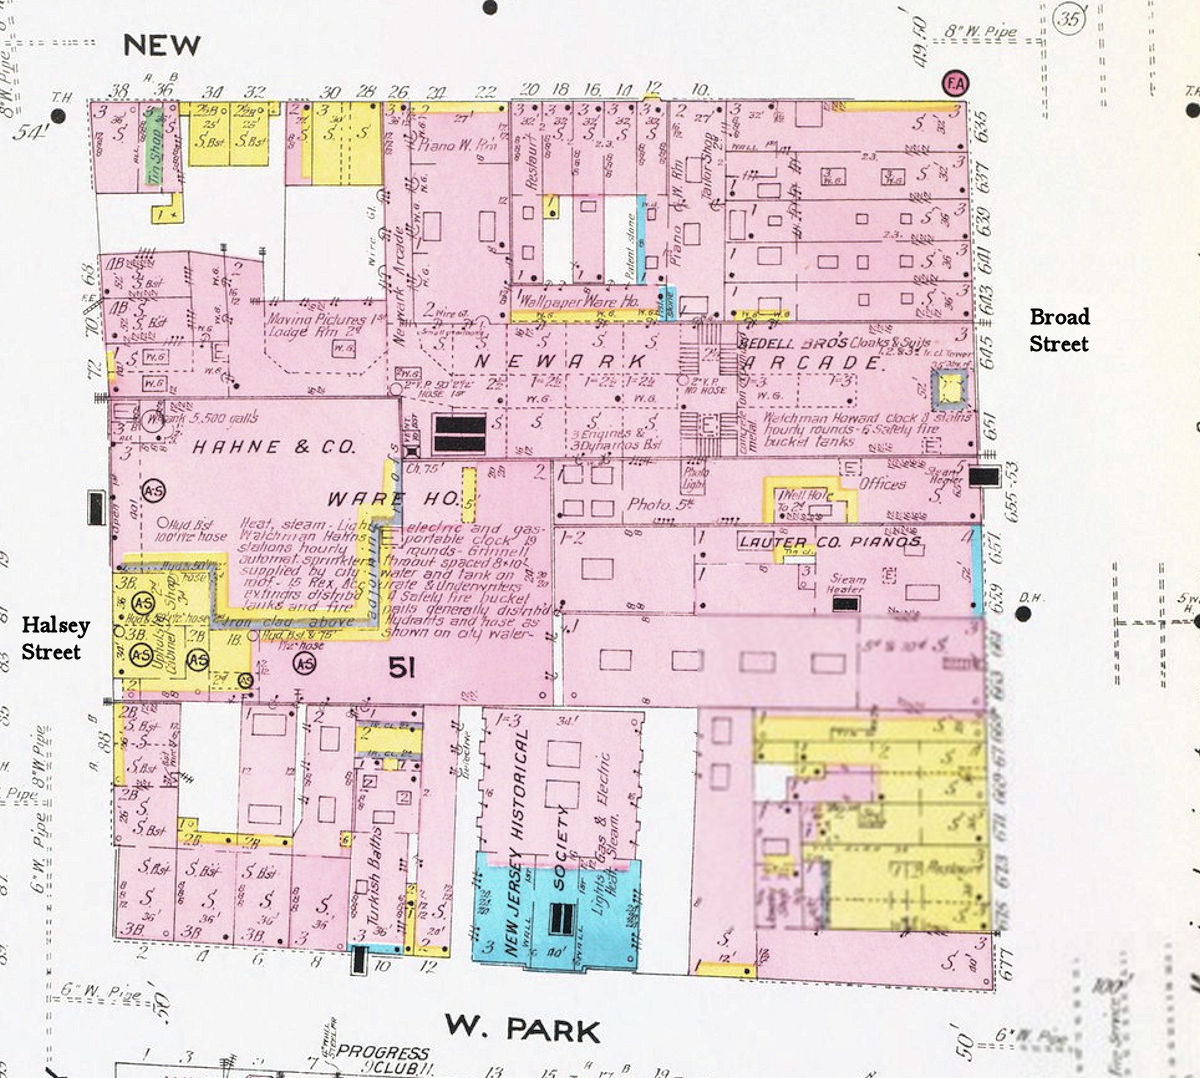 1908 Map
16 W. Park
